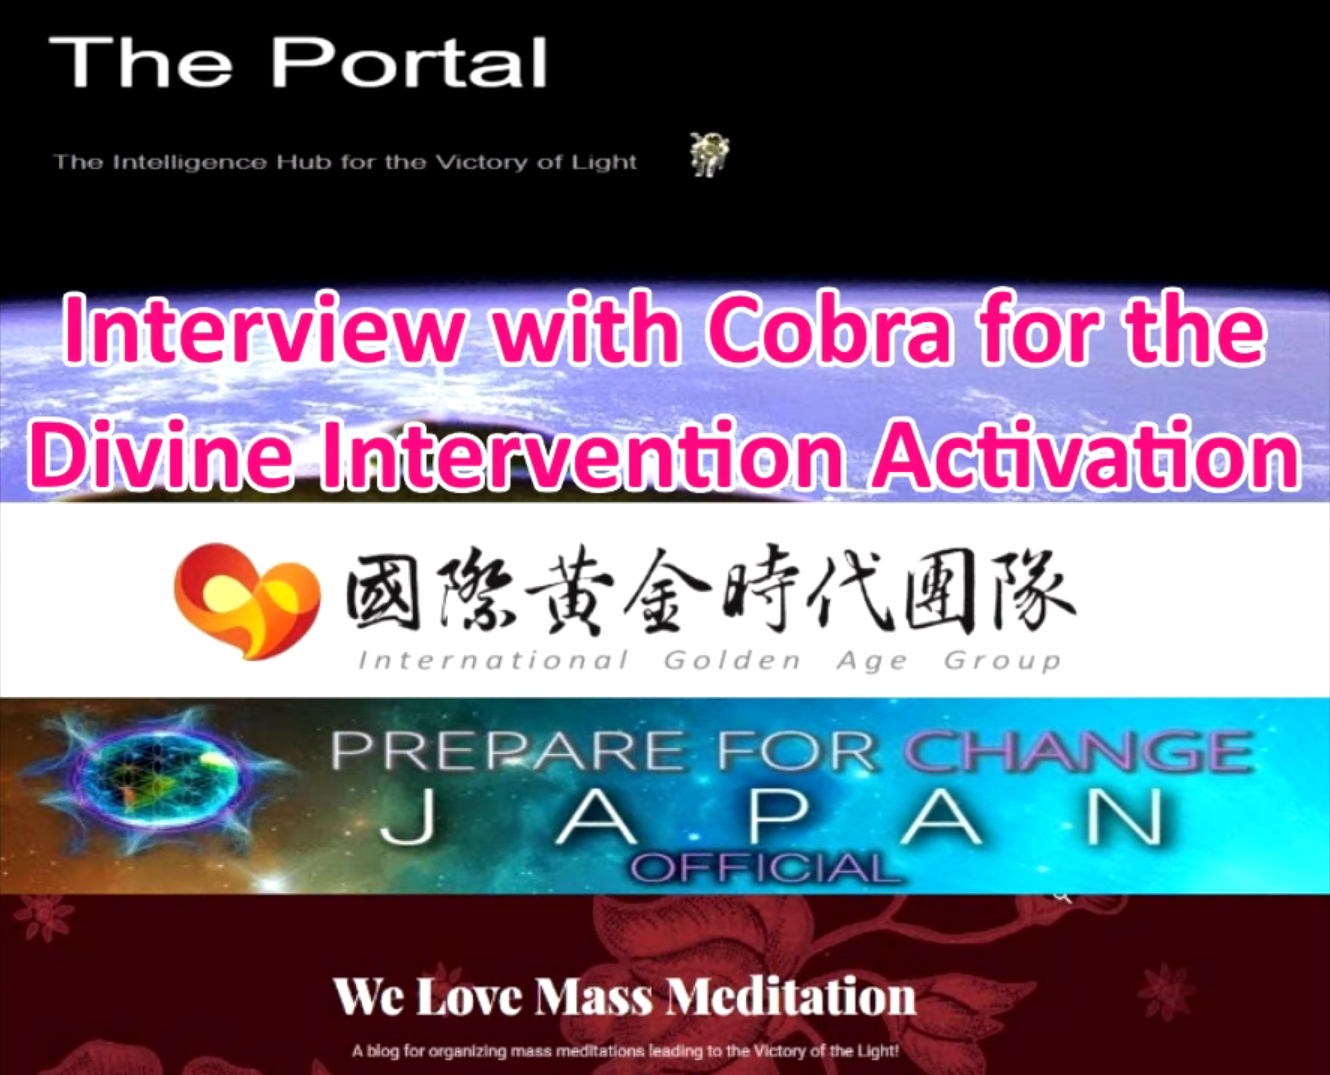 【地球盟友】【柯博拉Cobra】2021年12月柯博拉訪談節目-我們愛集體冥想&國際黃金時代團隊&日本準備轉變團隊(Japan PFC Official)聯合主持